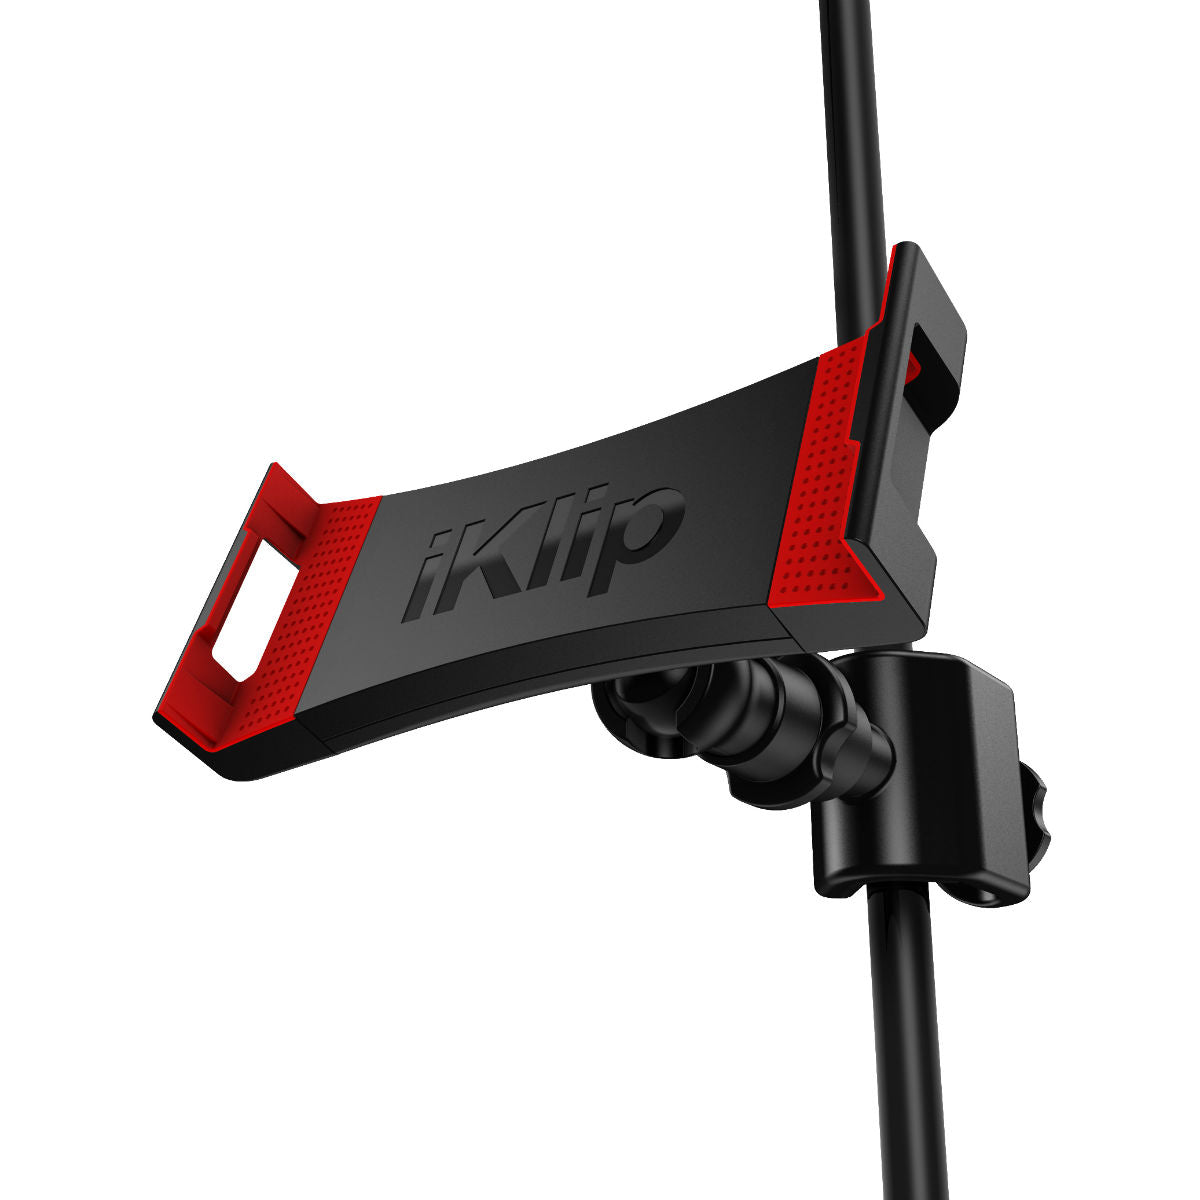 IK Multimedia iKlip 3 Deluxe Universal Tablet Stand Mount